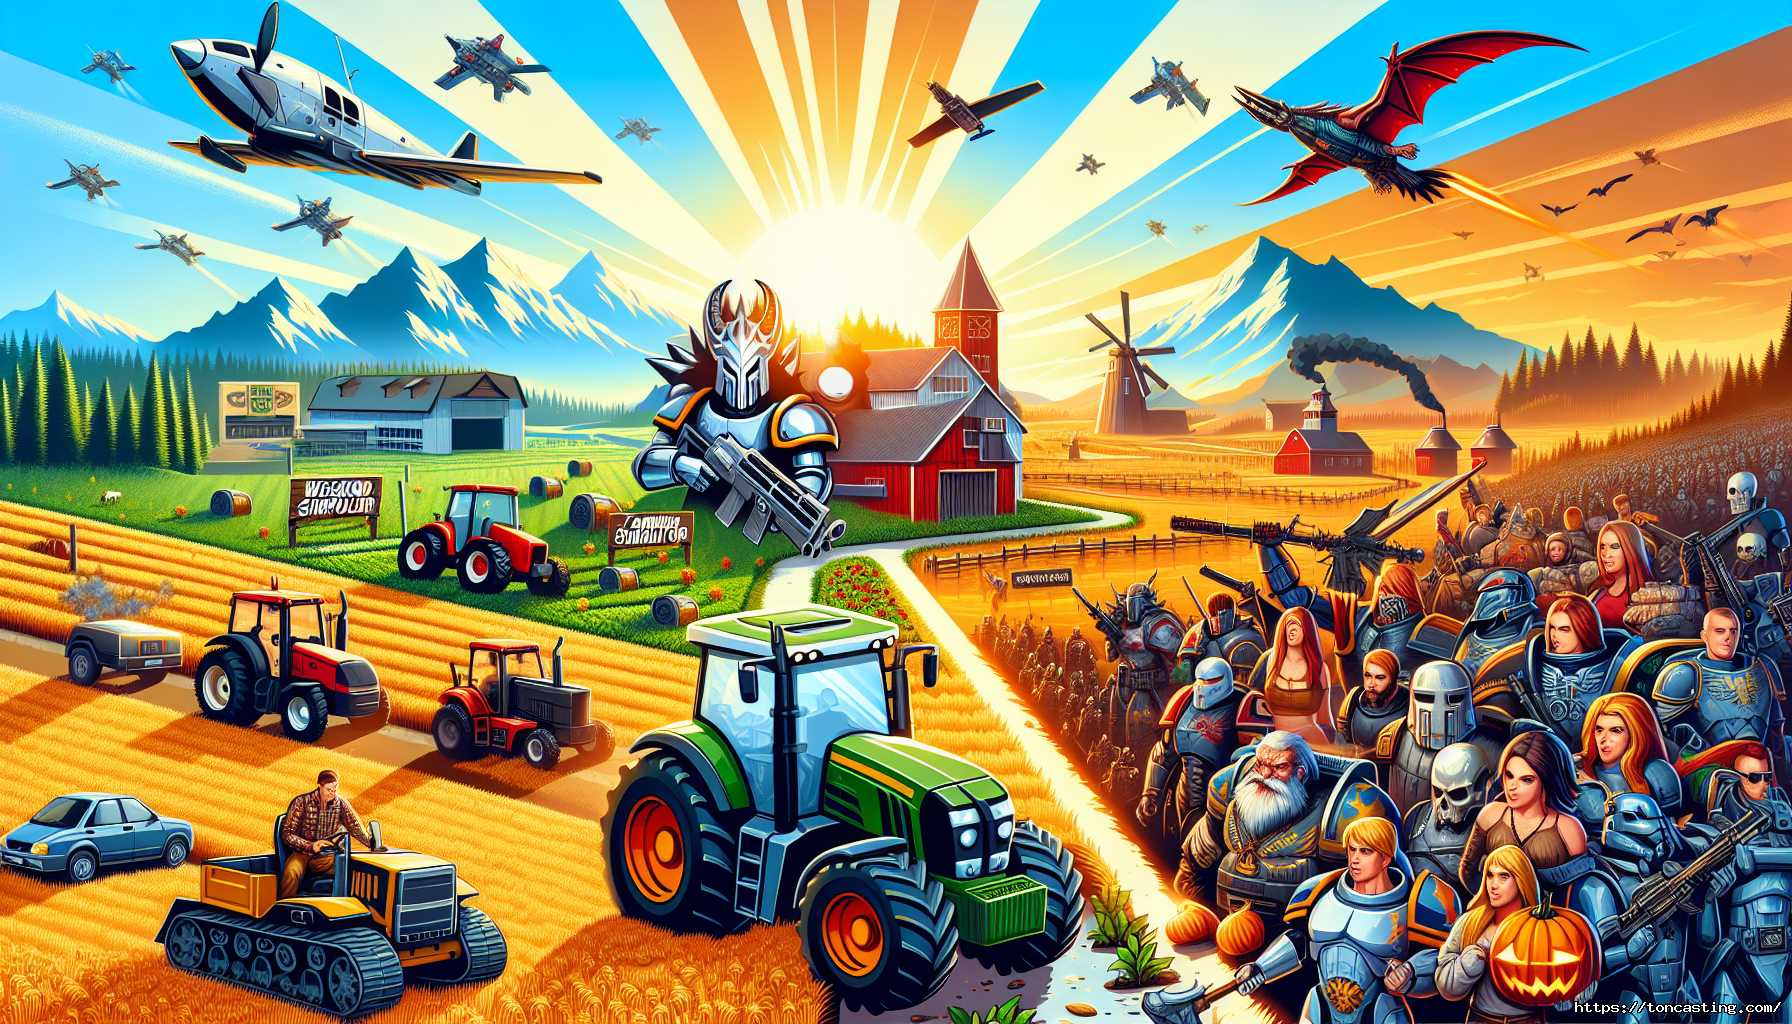 Illustration d'une ferme futuriste avec des guerriers, des avions et un dragon.